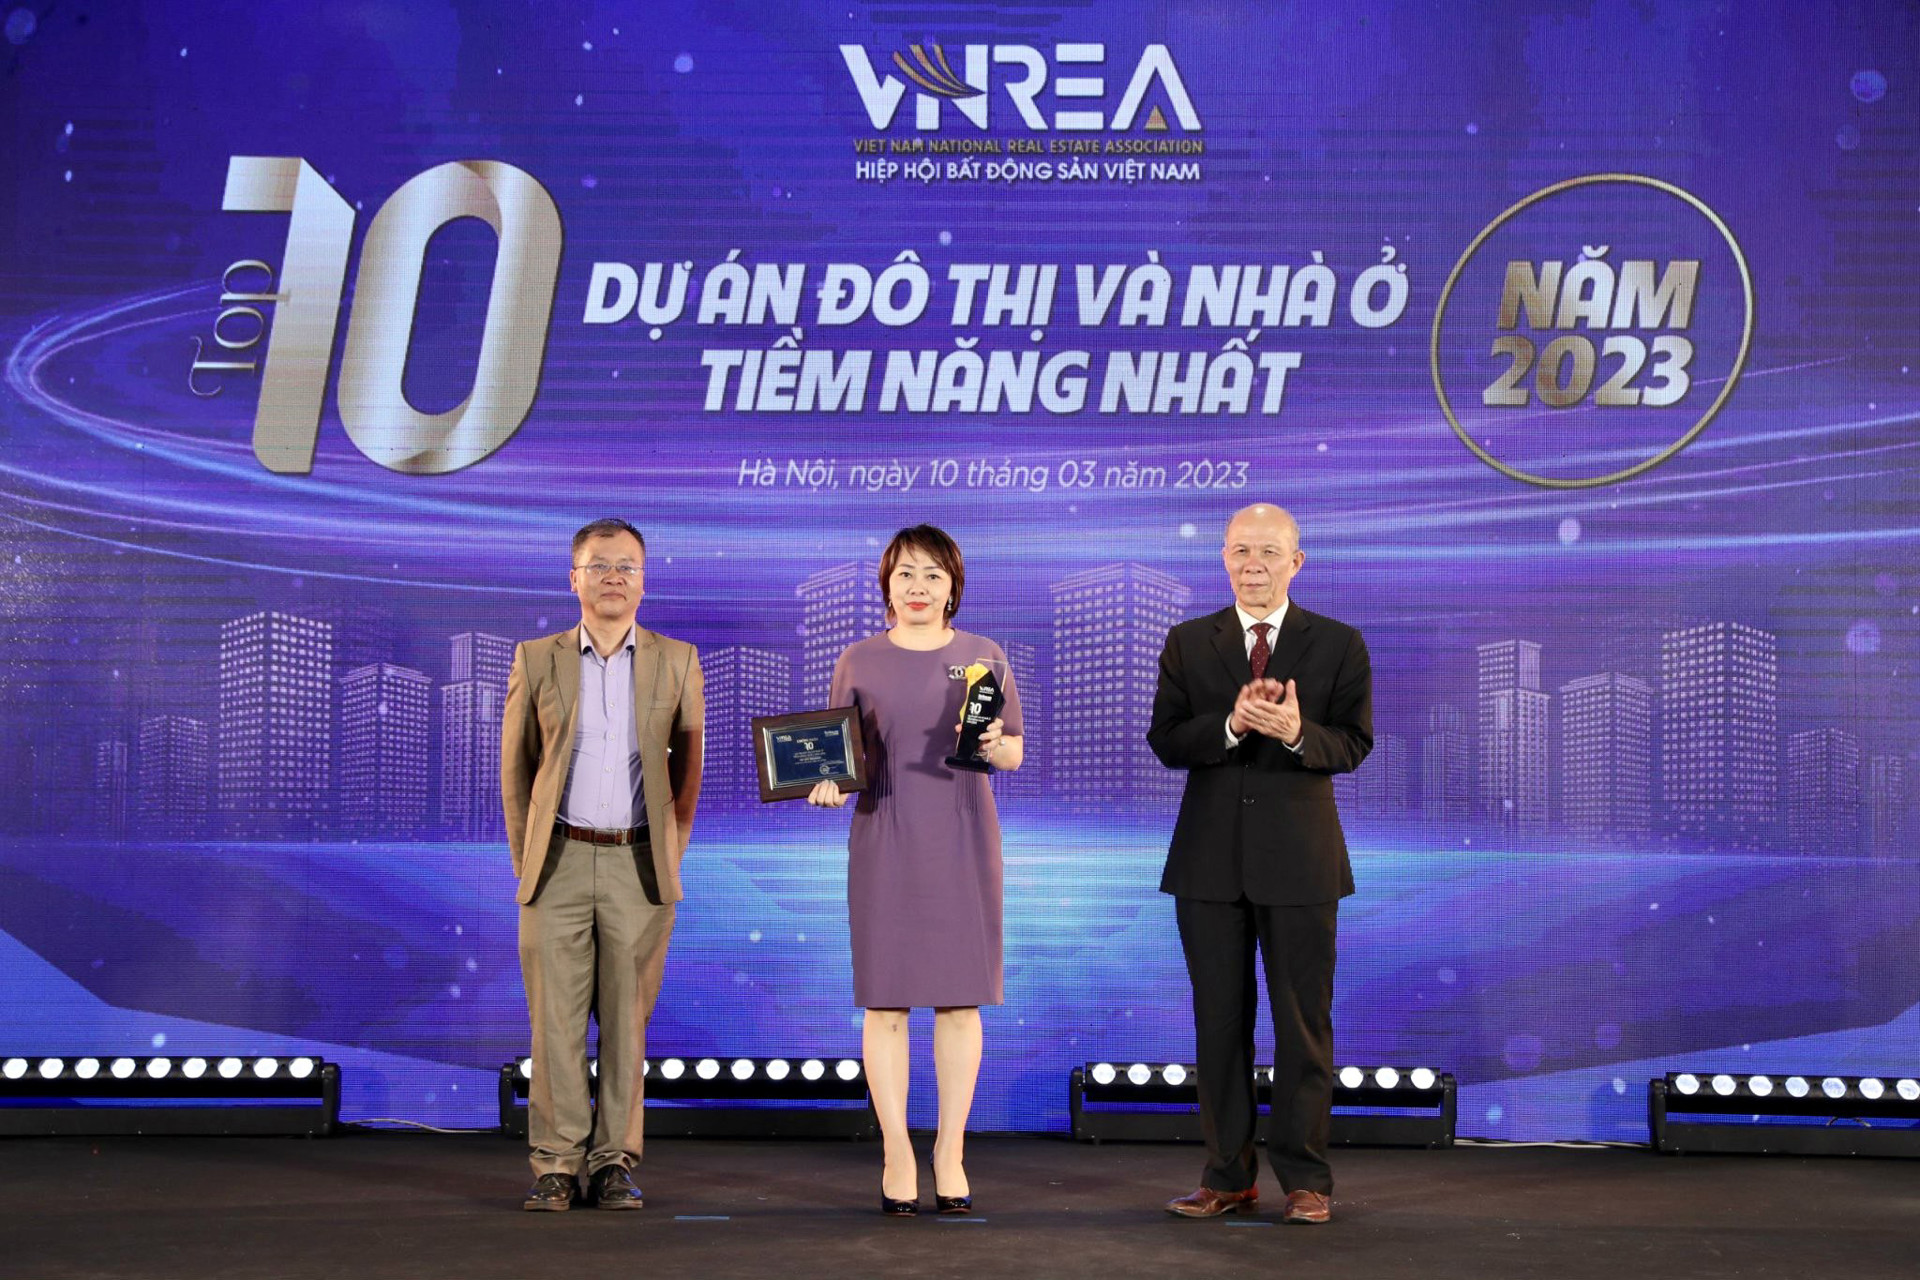 T&T Group được vinh danh Top 10 nhà phát triển BĐS hàng đầu Việt Nam năm 2022